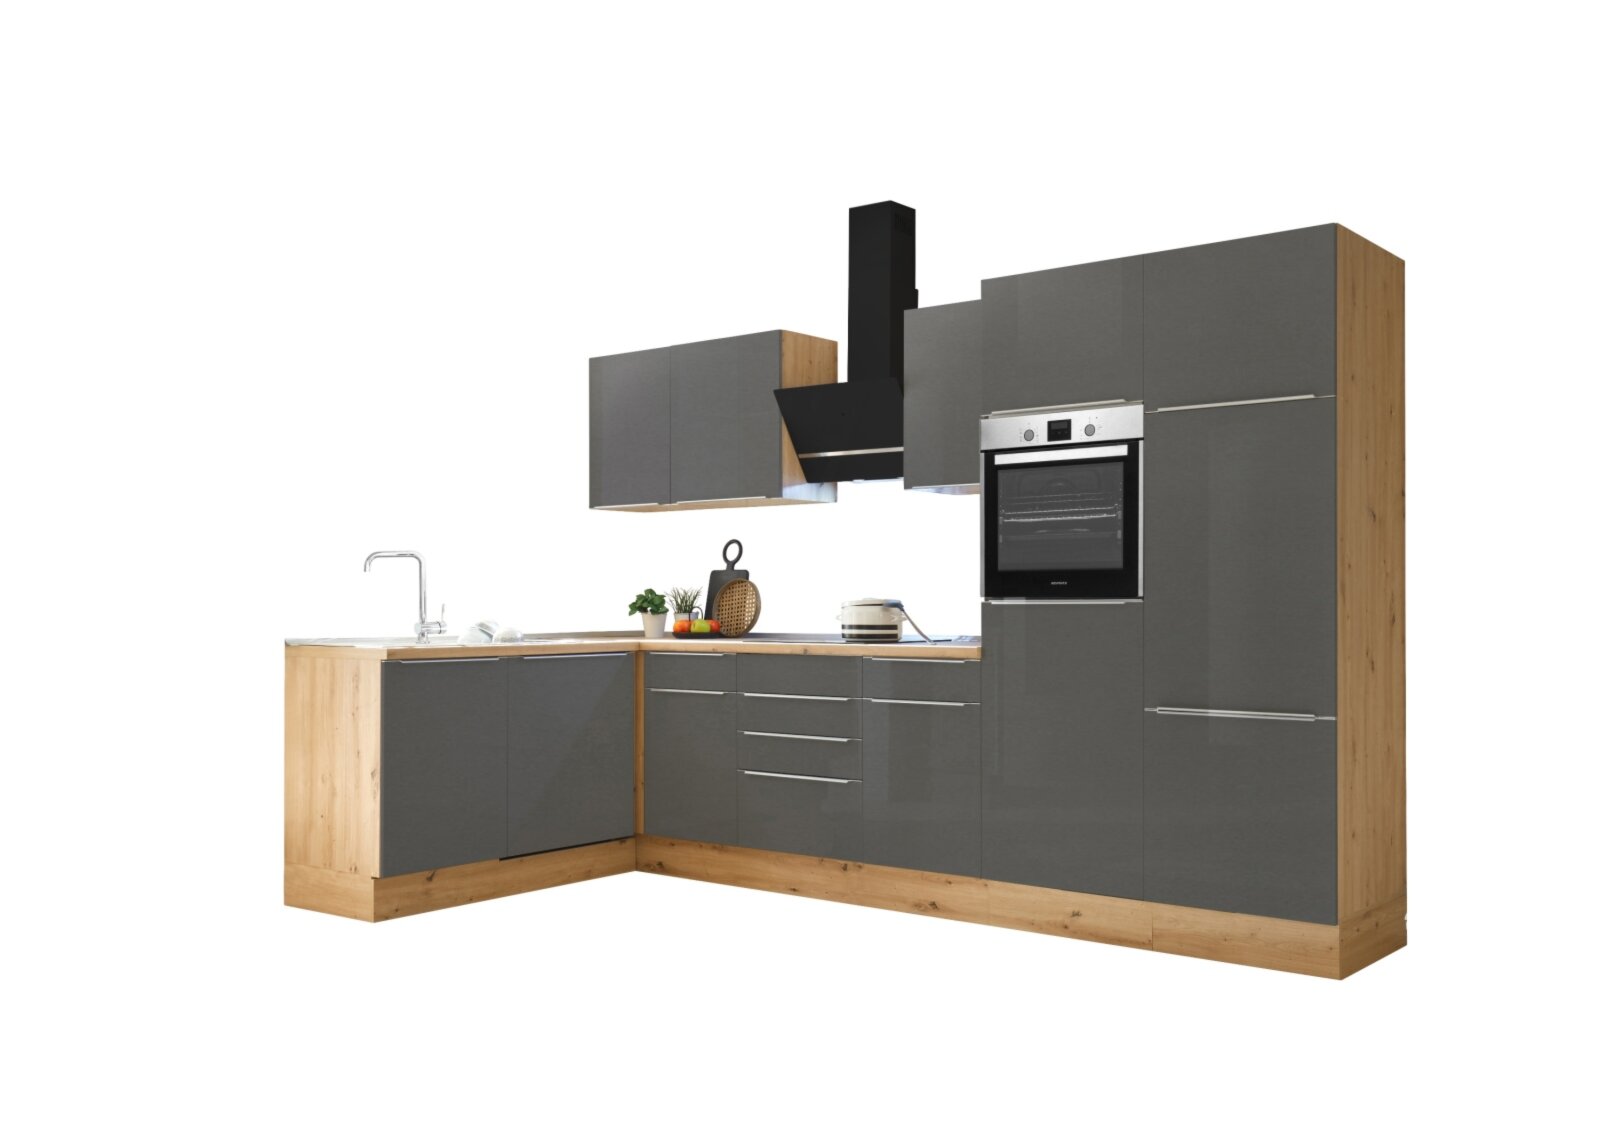 RESPEKTA Winkelküche - grau - Artisan Eiche - mit E-Geräten - 340 cm |  Online bei ROLLER kaufen